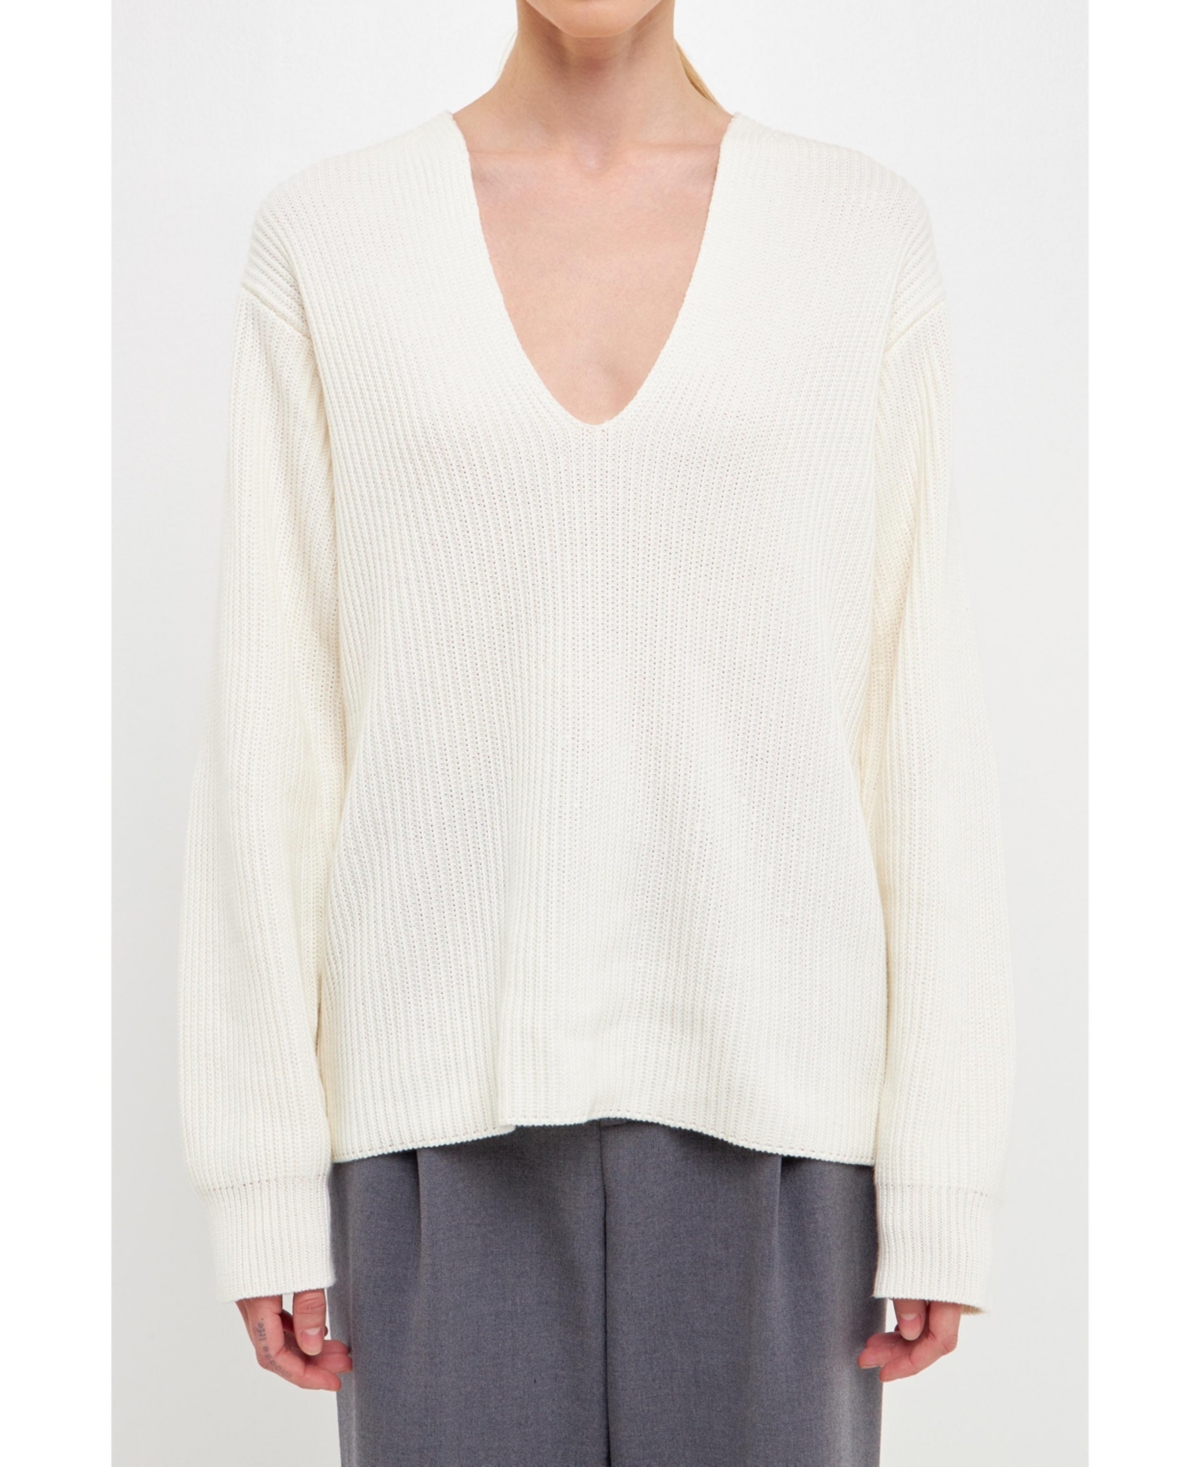 Women's V-neckline Long Sleeve Sweater - Cream